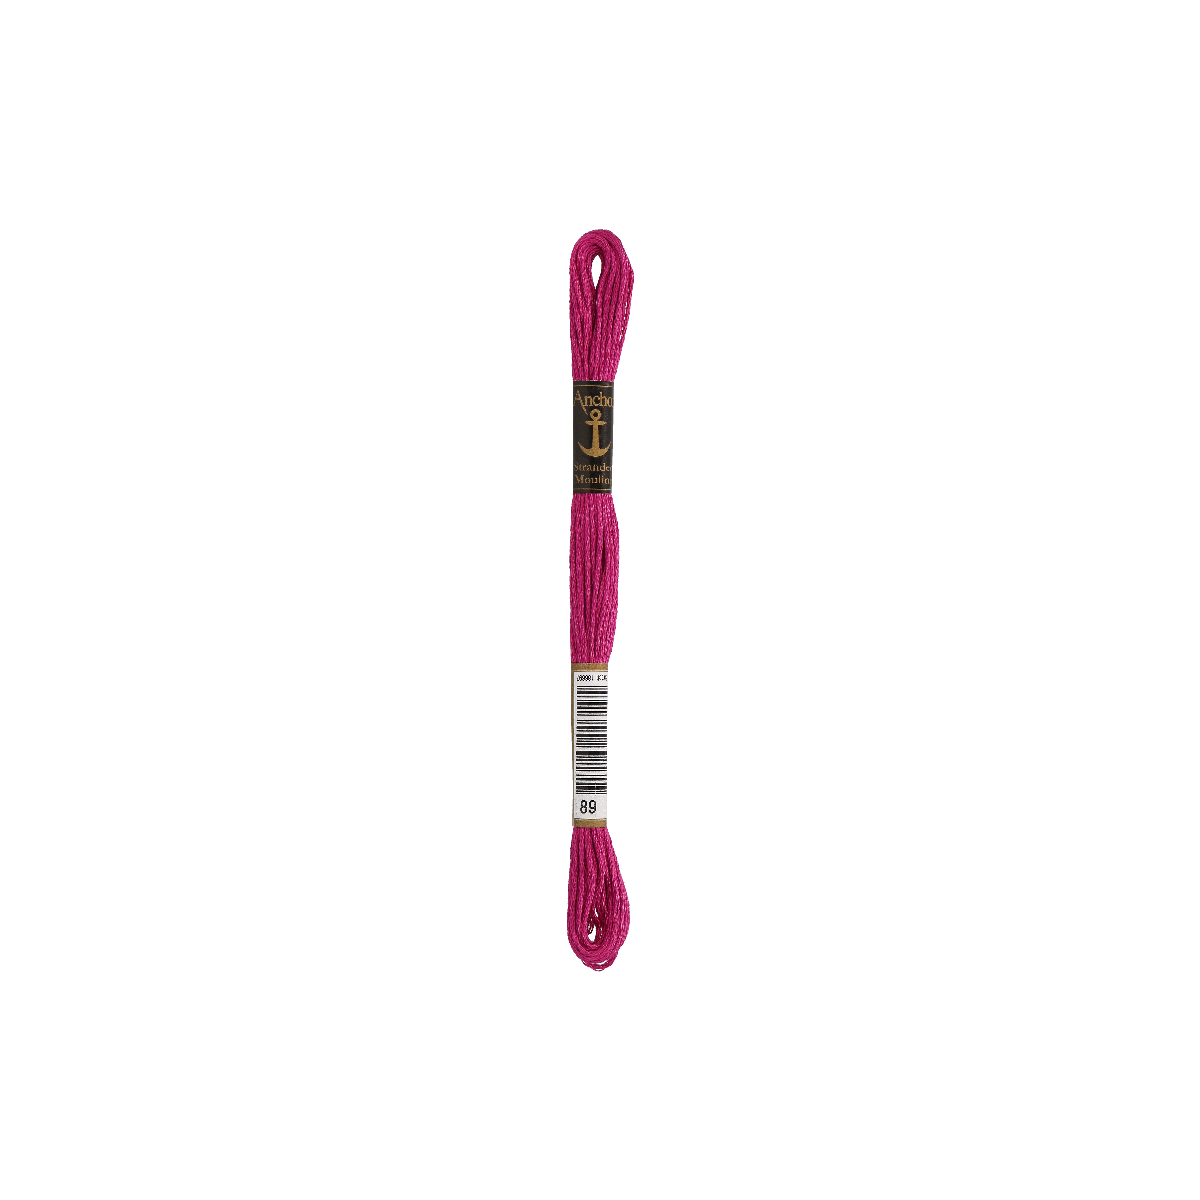 Anchor мулине 8m, фиолетовый, Хлопок,  цвет 89, 6-ниточный